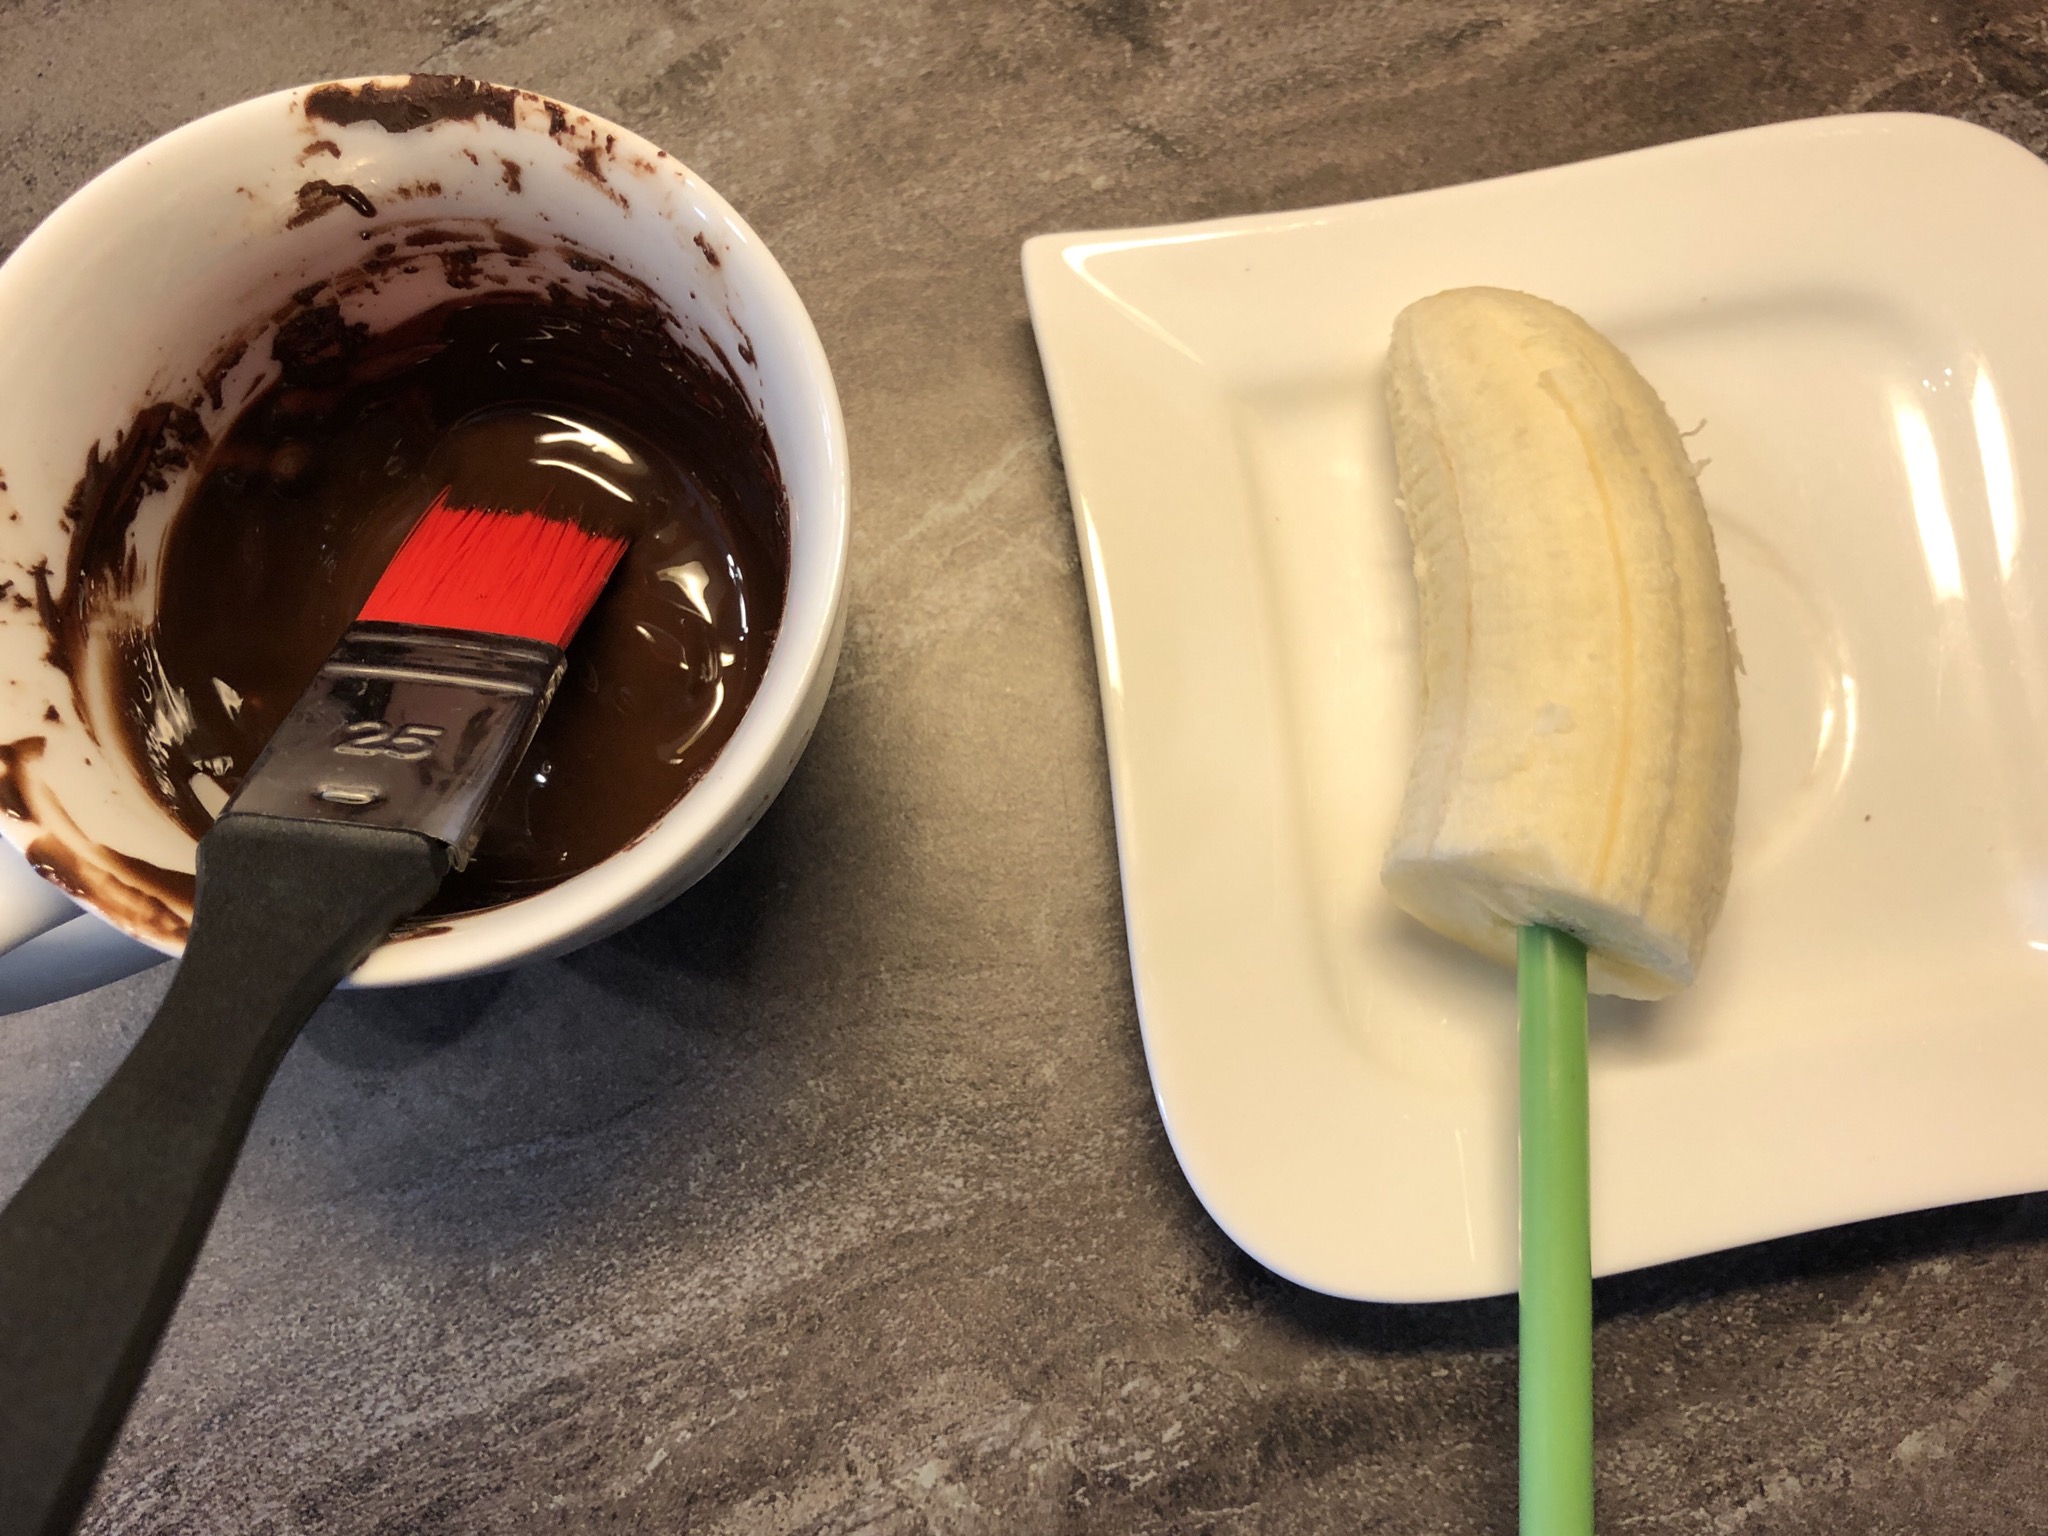 Bild zum Schritt 4 für das Bastel- und DIY-Abenteuer für Kinder: 'Mit einem Pinsel die Banane mit Schokolade überziehen.'